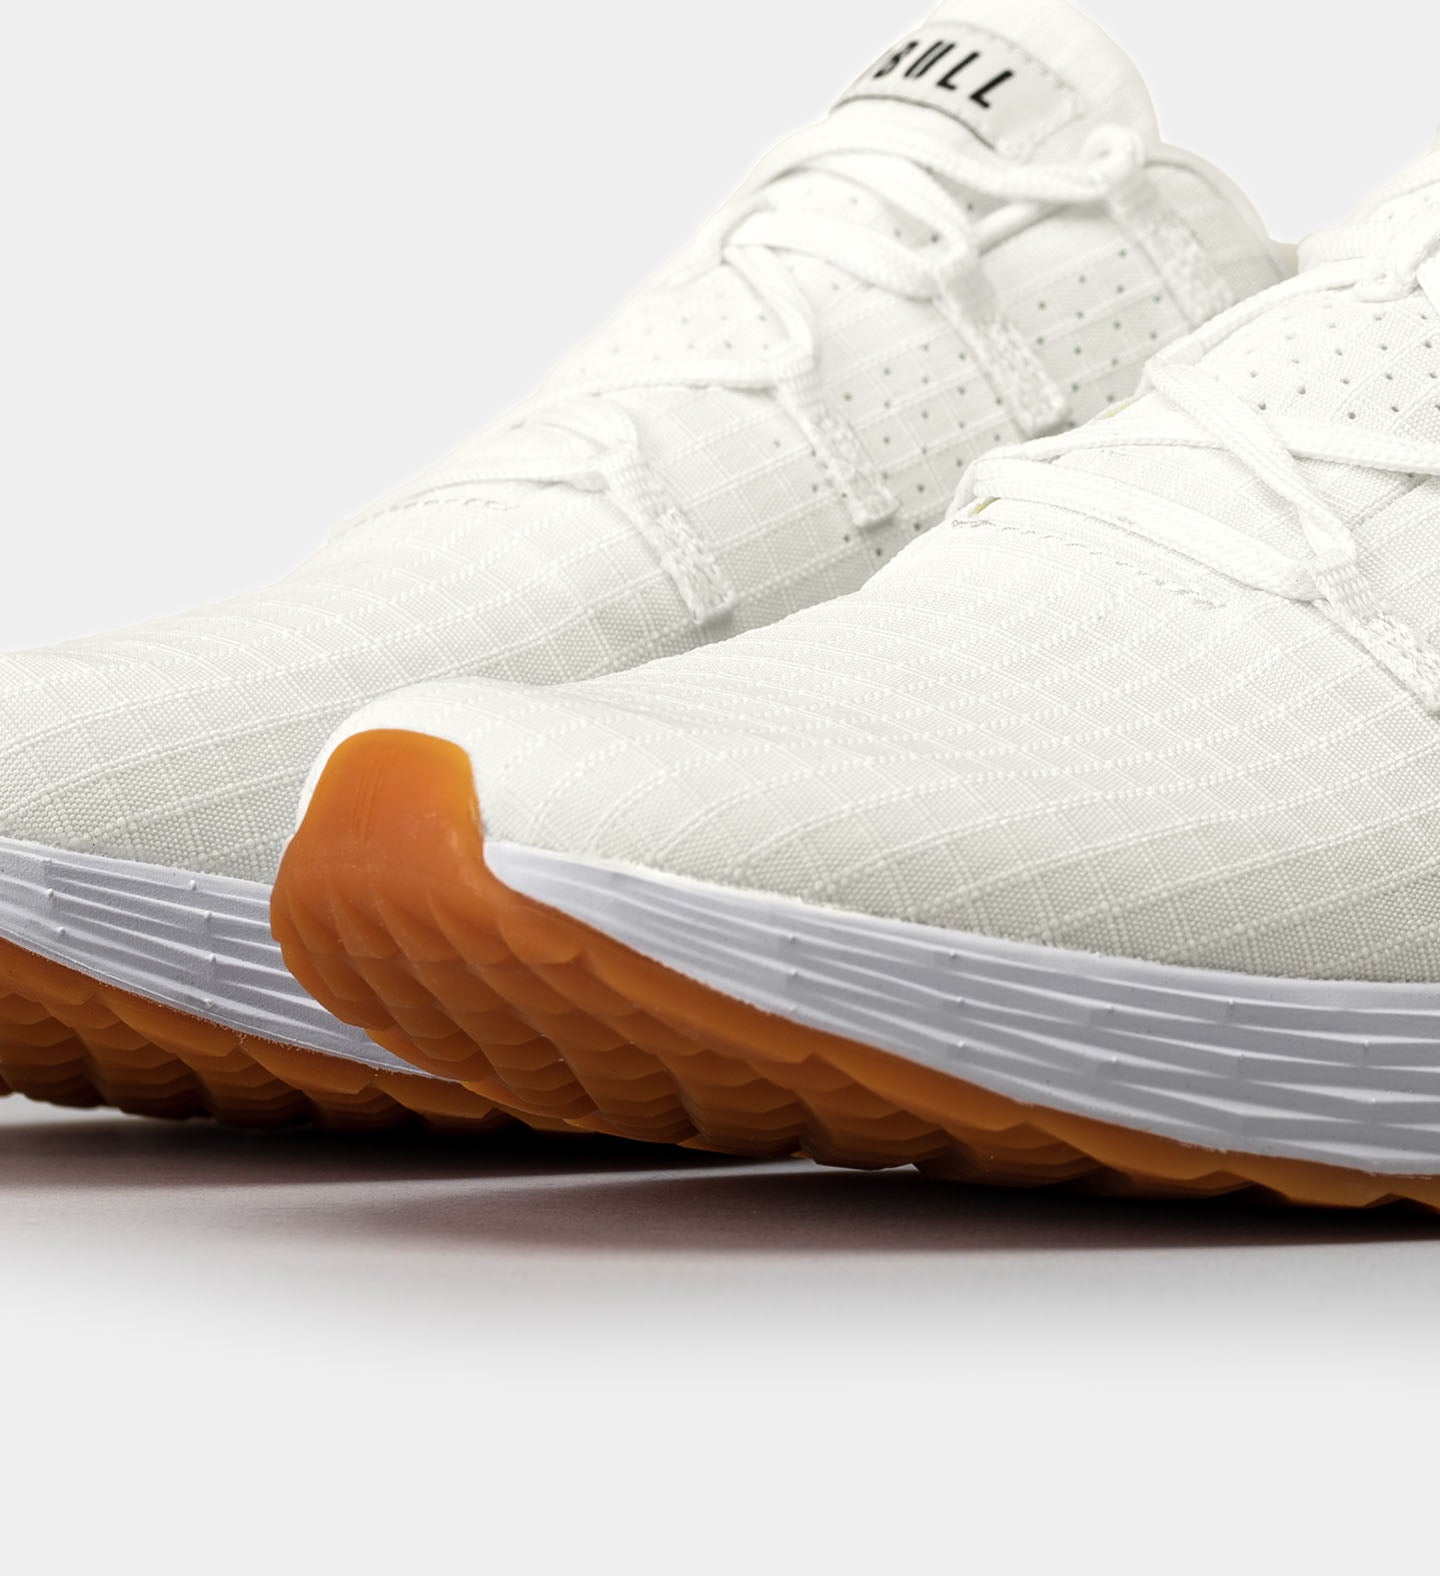 Nobull Runner+ Running Sneaker Review